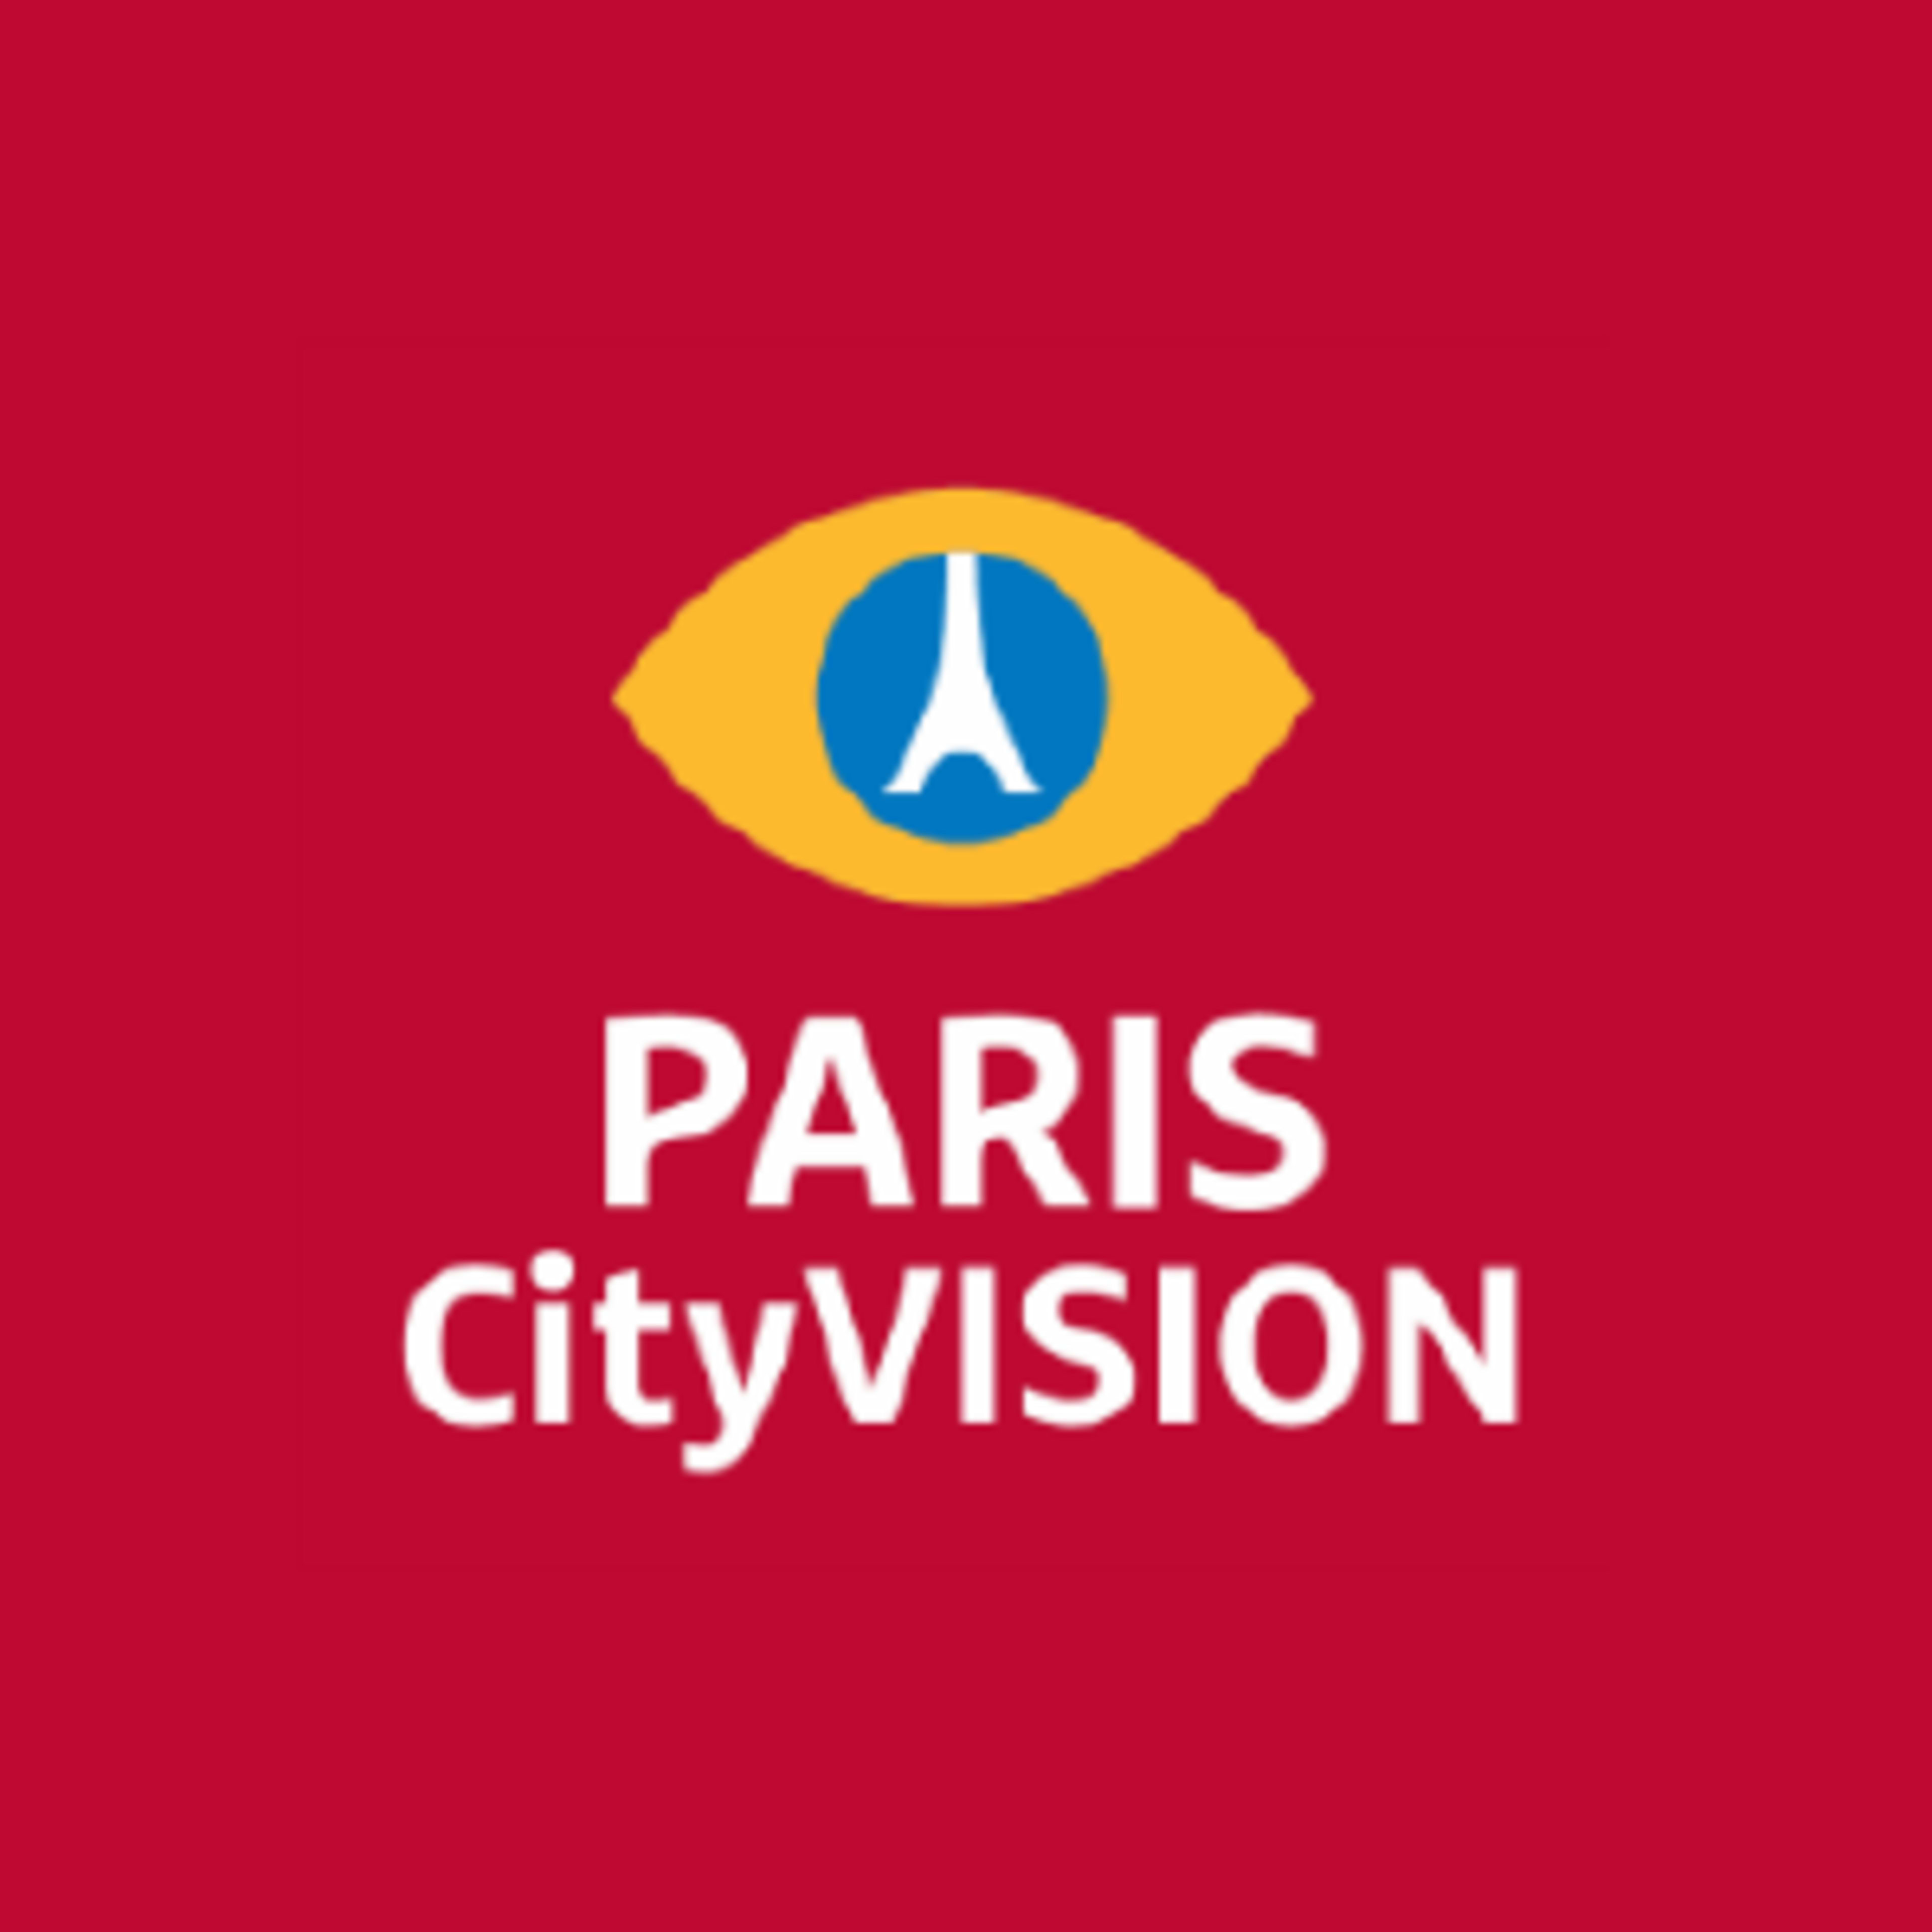 ParisCityVision Code